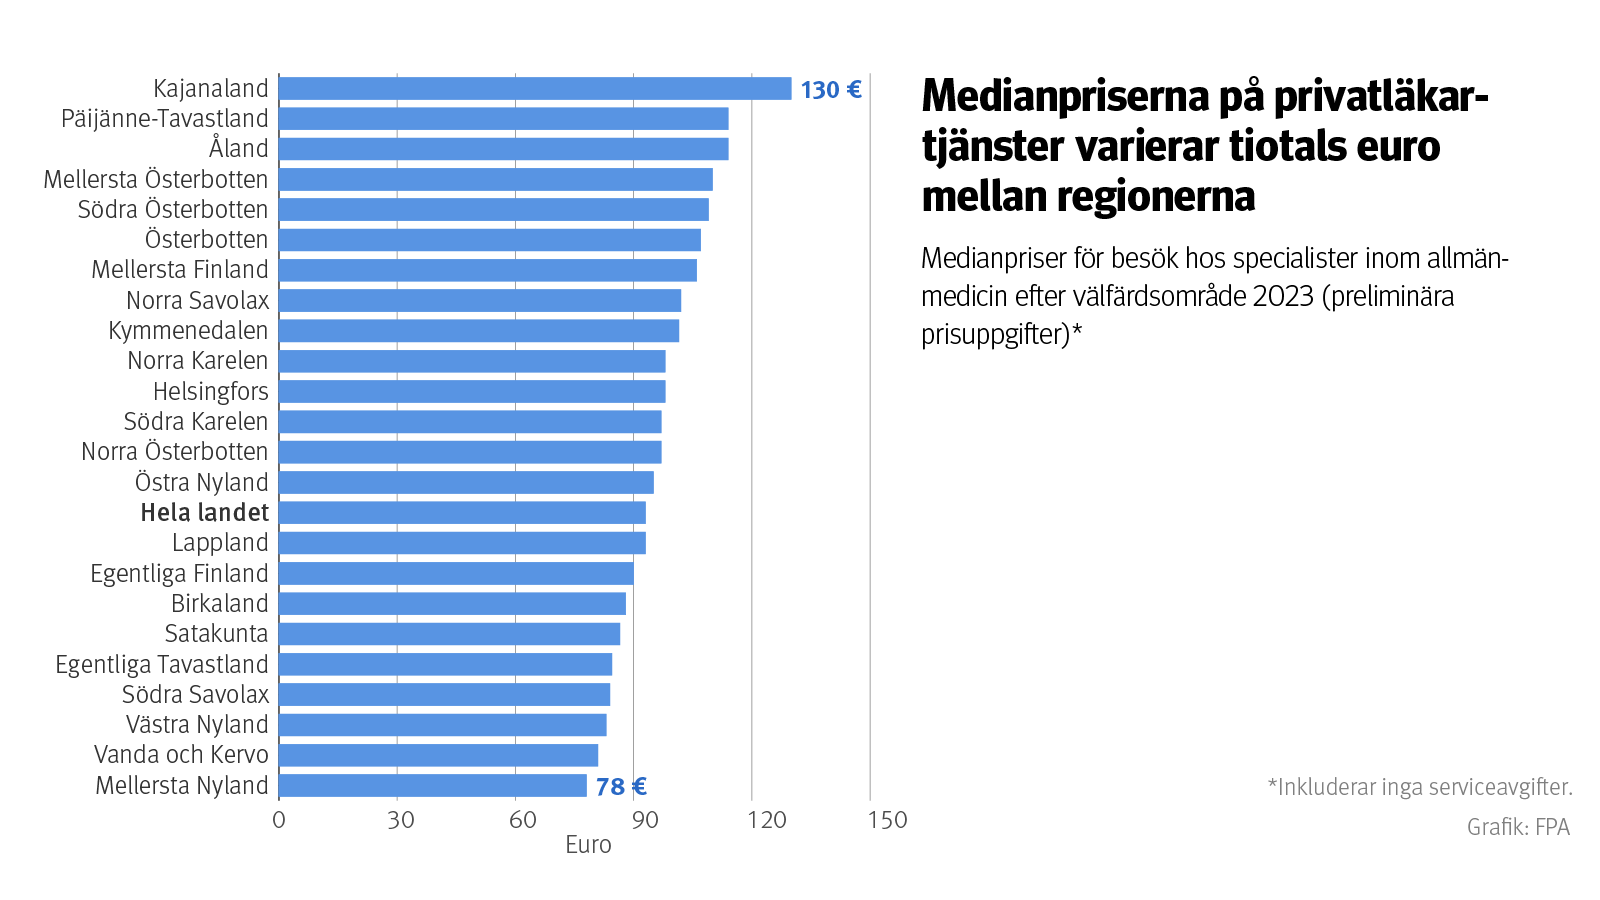 Figur: Medianpriser för besök hos specialister inom allmänmedicin efter välfärdsområde 2023. Inkluderar inga serviceavgifter. Bilden visar att priserna på privatläkartjänster varierar med så mycket som tiotals euro mellan regionerna.